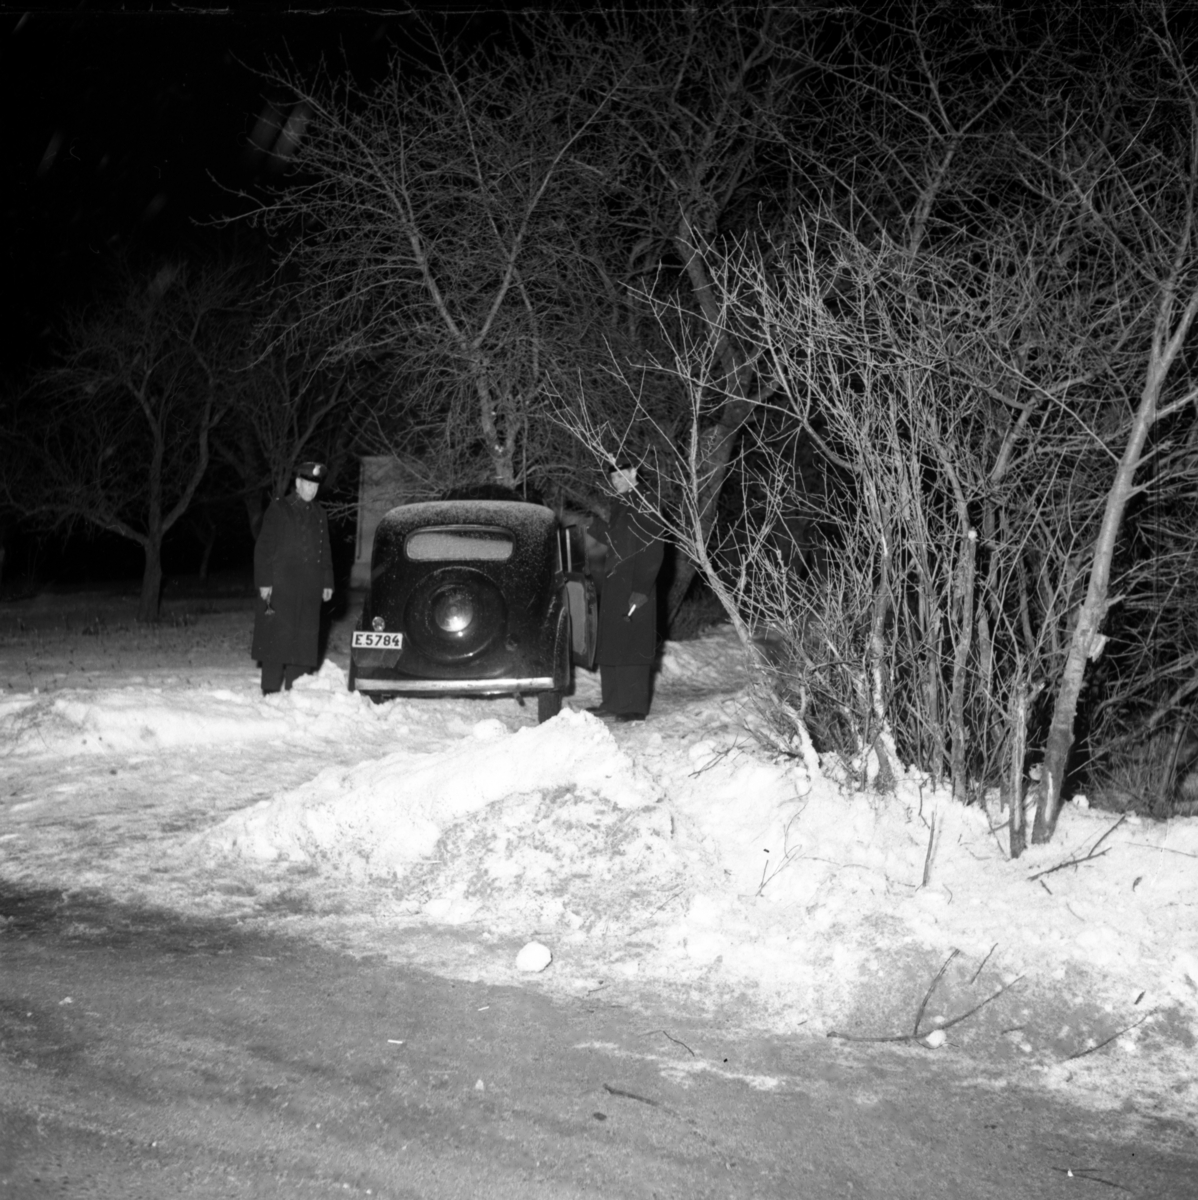 Efter att ha blivit jagade av poliser i radiobil, har ett par biltjuvar slutligen hejdats i Hackefors av ett träd. Bil. Krock. Singelolycka.